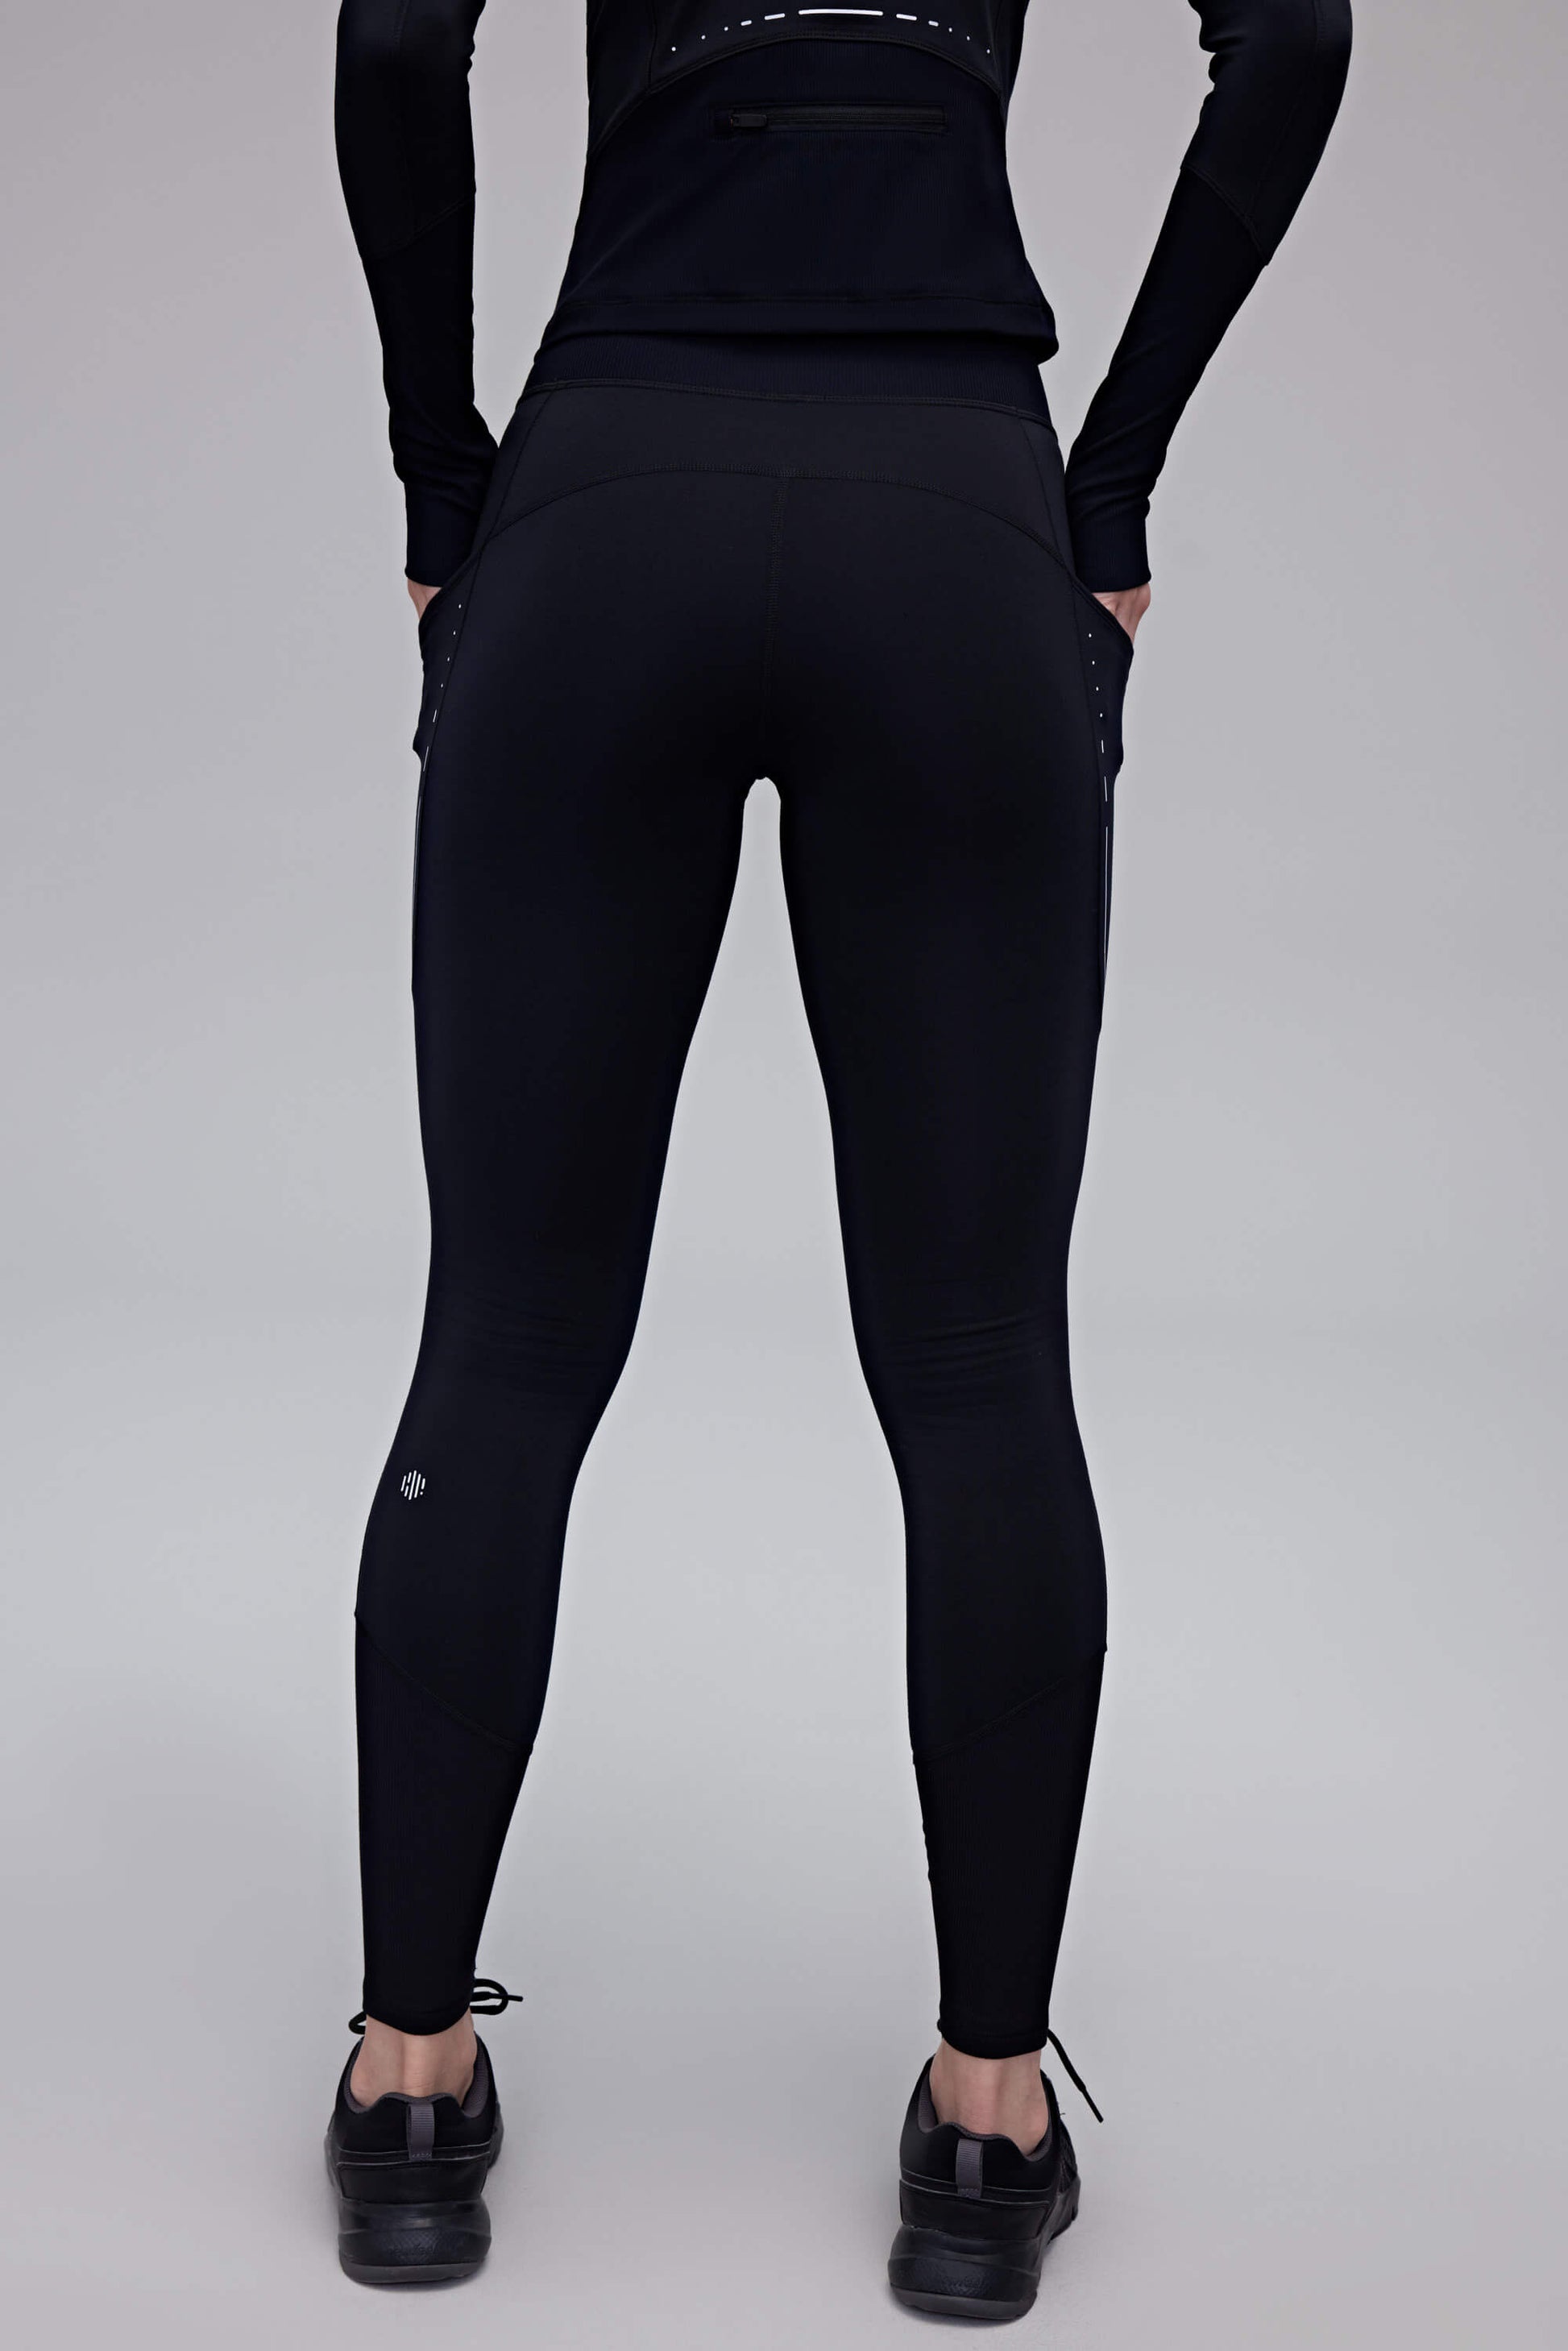 back of woman in black leggings